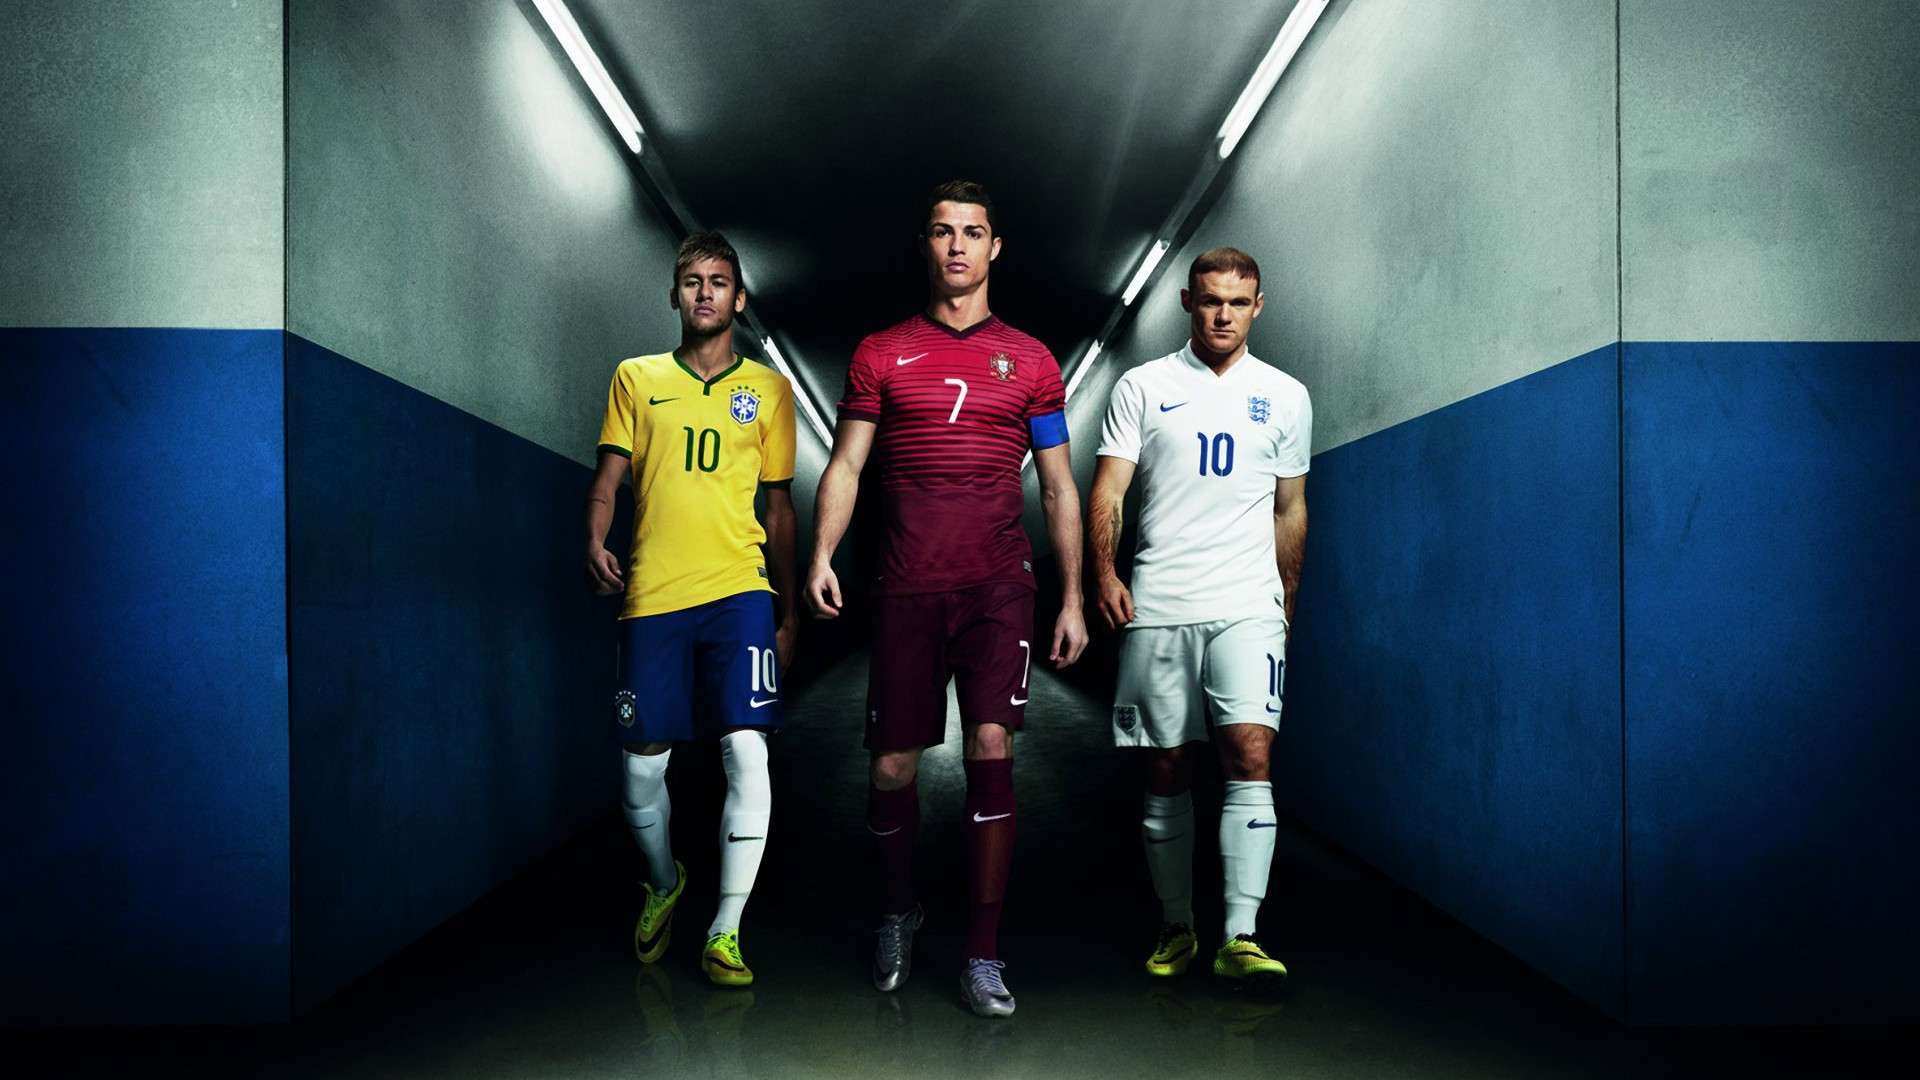 Neymar, Ronaldo, and Rooney – Nike wallpaper